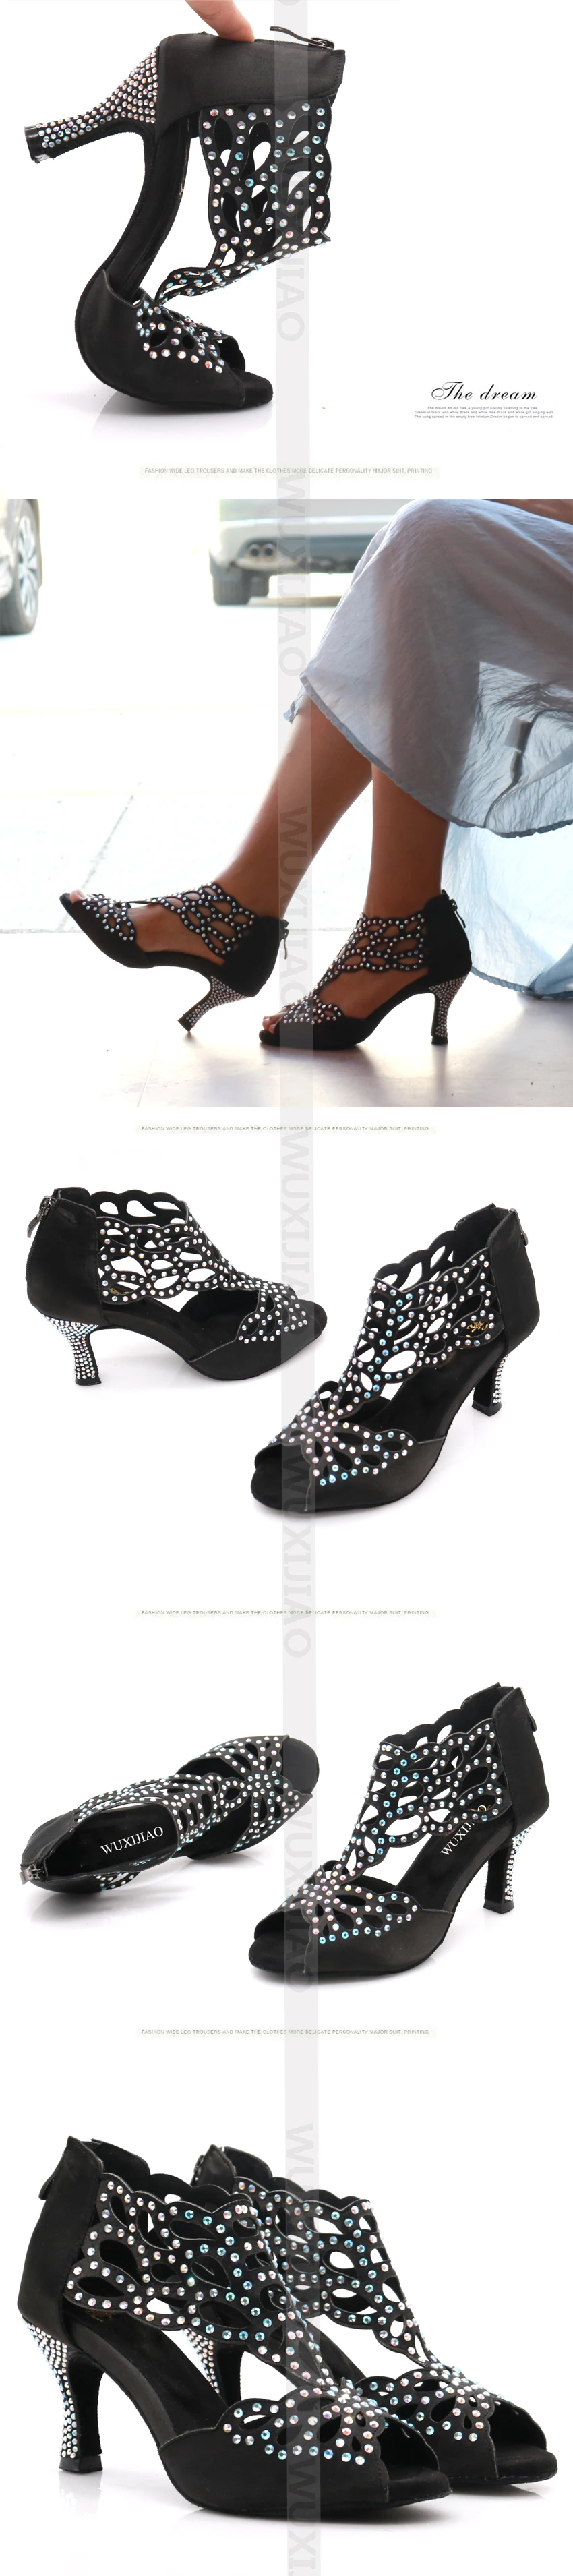 WUXIJIAO/Женская обувь; джазовые кроссовки; туфли для танцев на высоком каблуке со стразами; туфли для латинских танцев